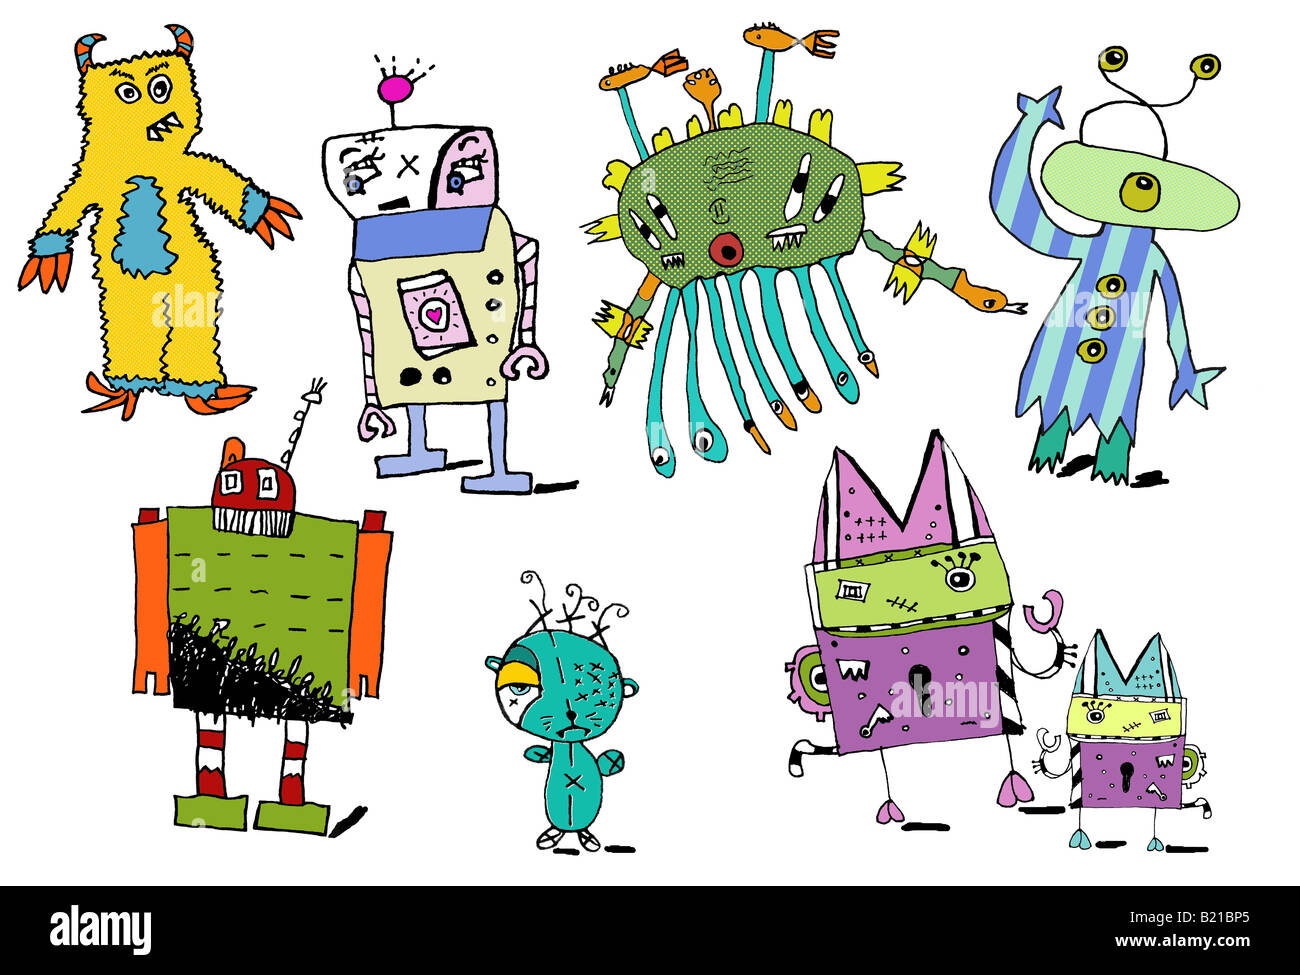 Los niños del estilo de ilustraciones de monstruos, Robots y criaturas. Foto de stock